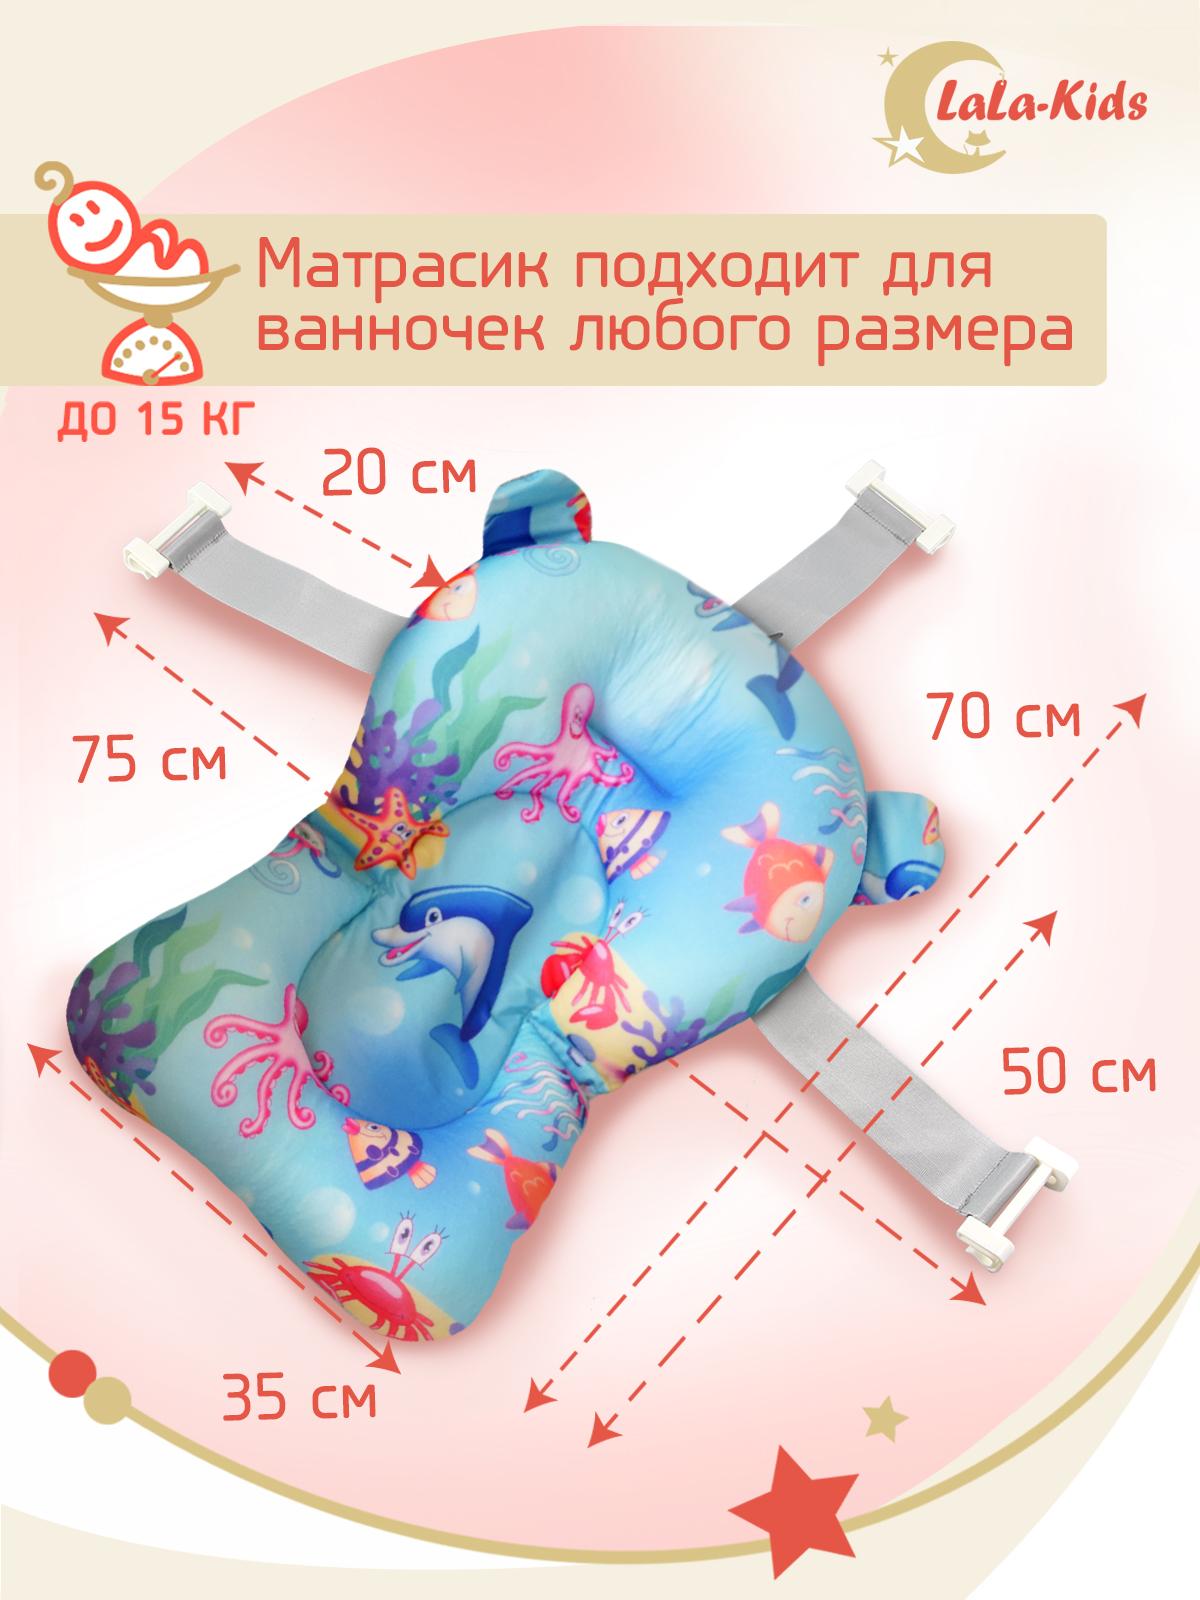 Детская ванночка с термометром LaLa-Kids складная с матрасиком для купания новорожденных - фото 17